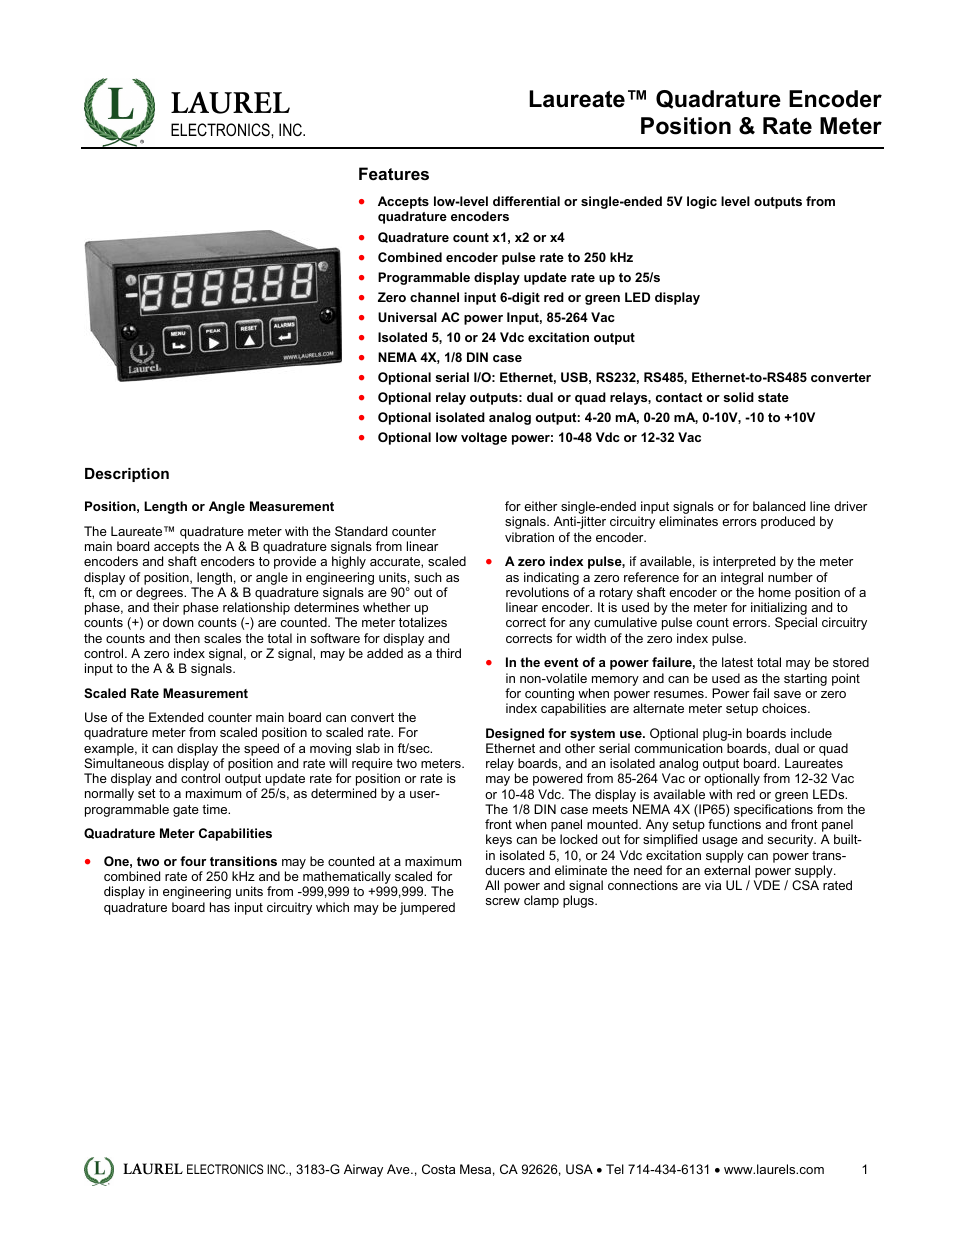 Laureate Quadrature Encoder Position & Rate Meter